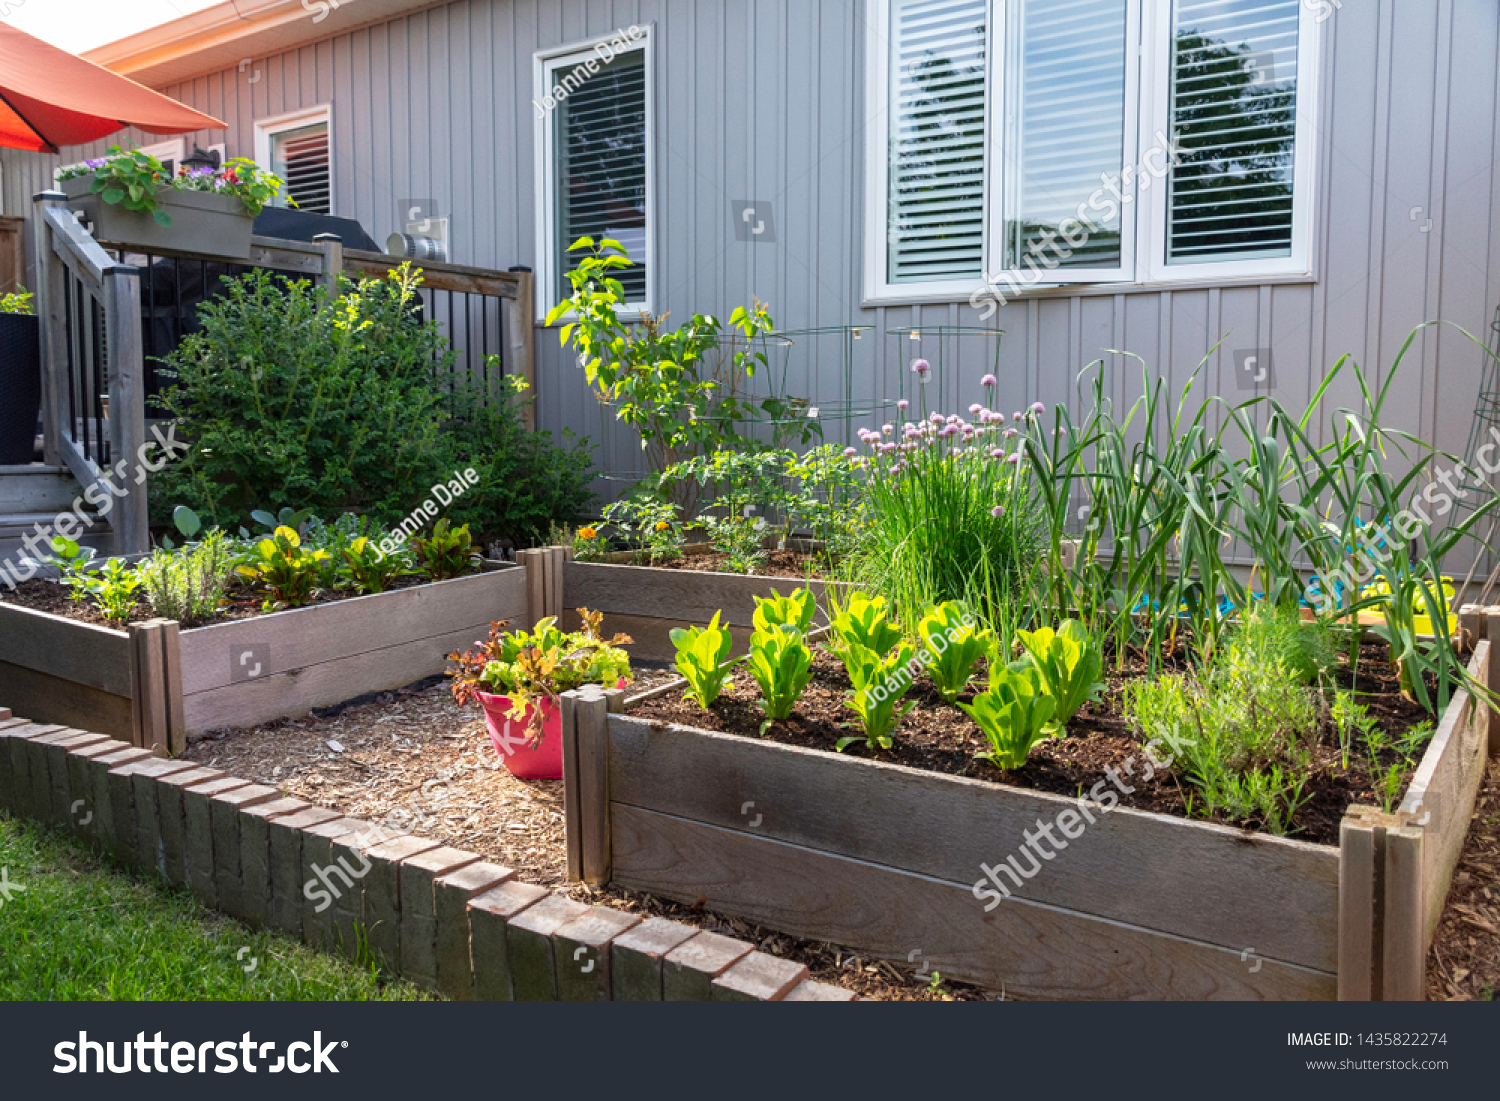 This Small Urban Backyard Garden Contains Stock Photo Edit Now